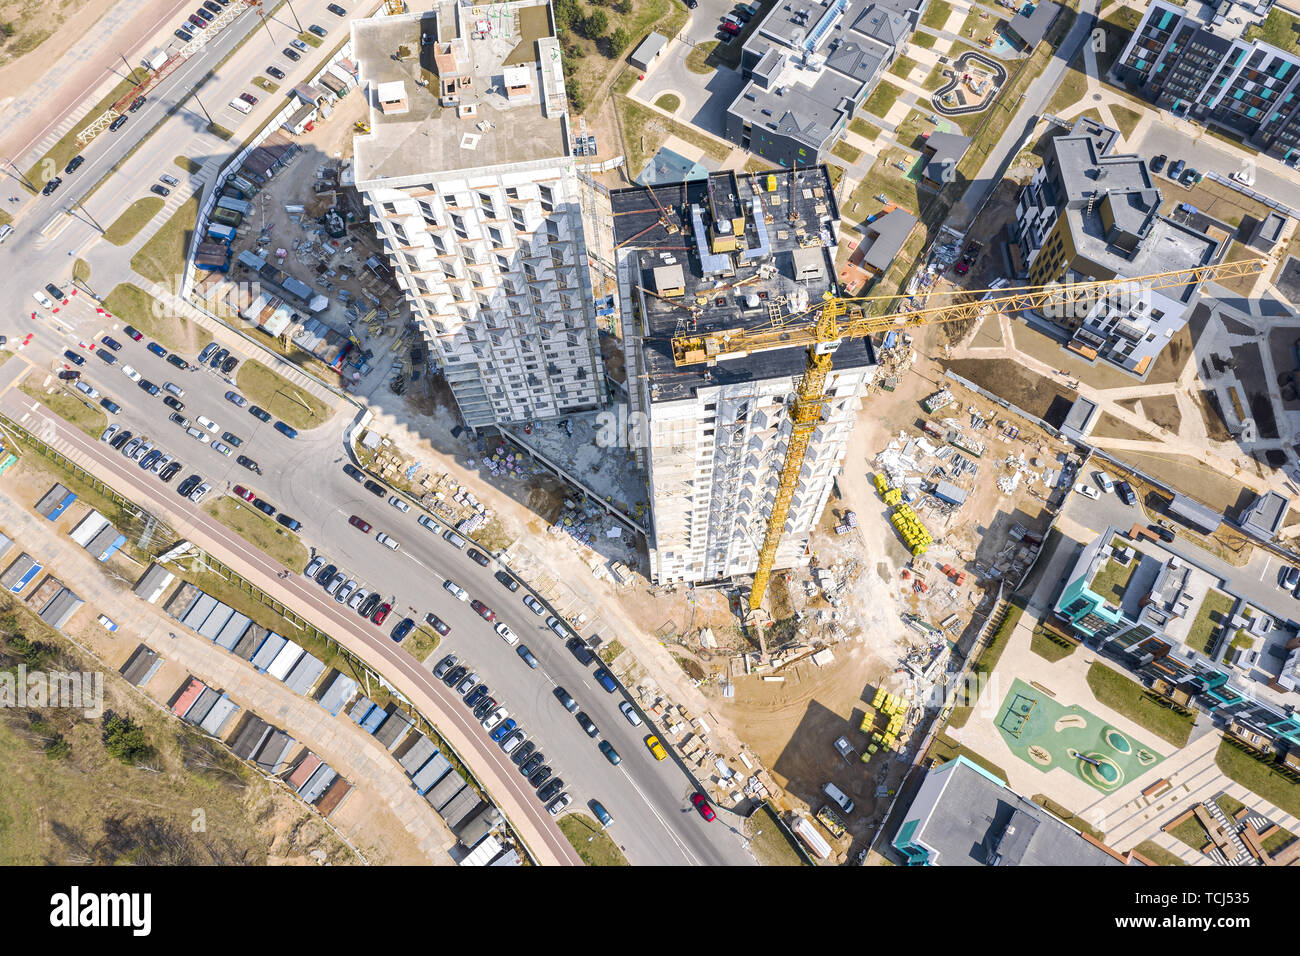 Vista aerea della città sito in costruzione. edifici di appartamenti in costruzione. drone fotografia Foto Stock